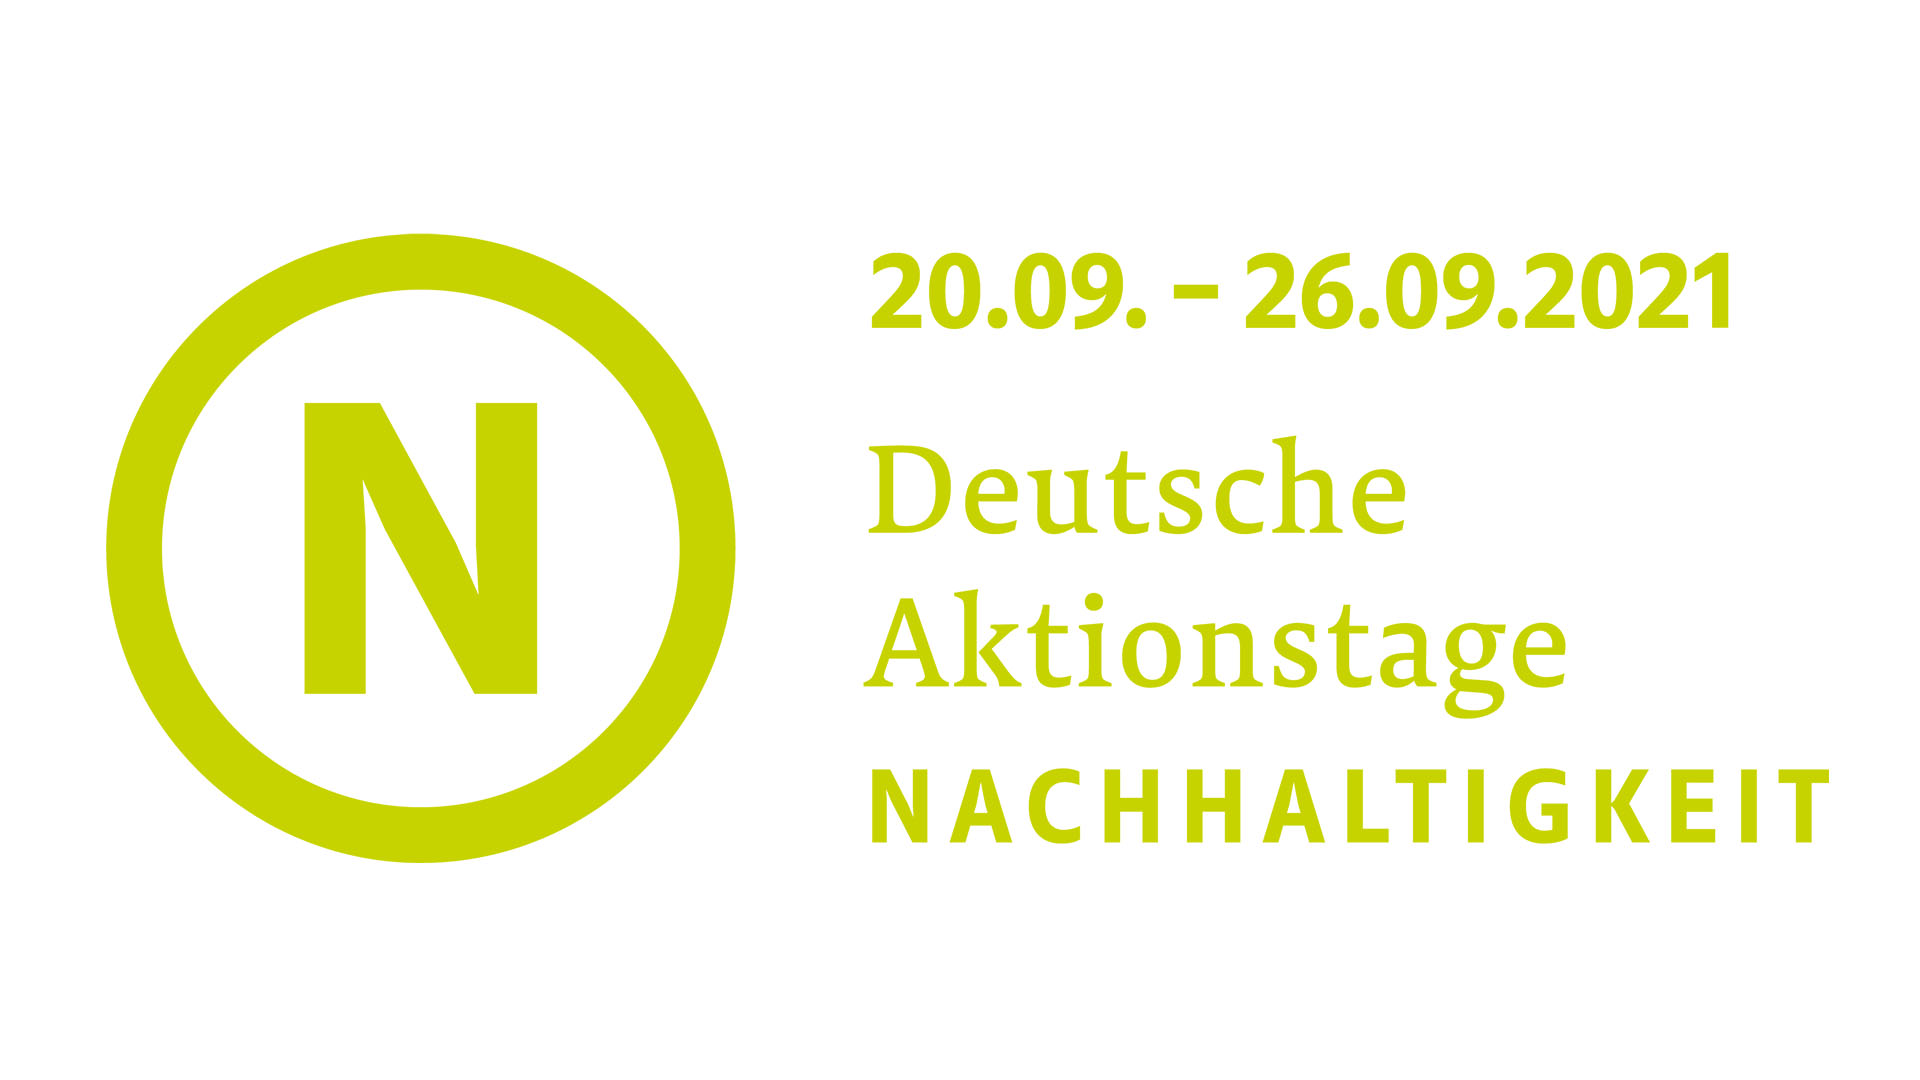 Das Logo der "Deutsche Aktionstage Nachhaltigkeit" - ein N in einem Kreis - und grüner Namen auf weißem Grund.